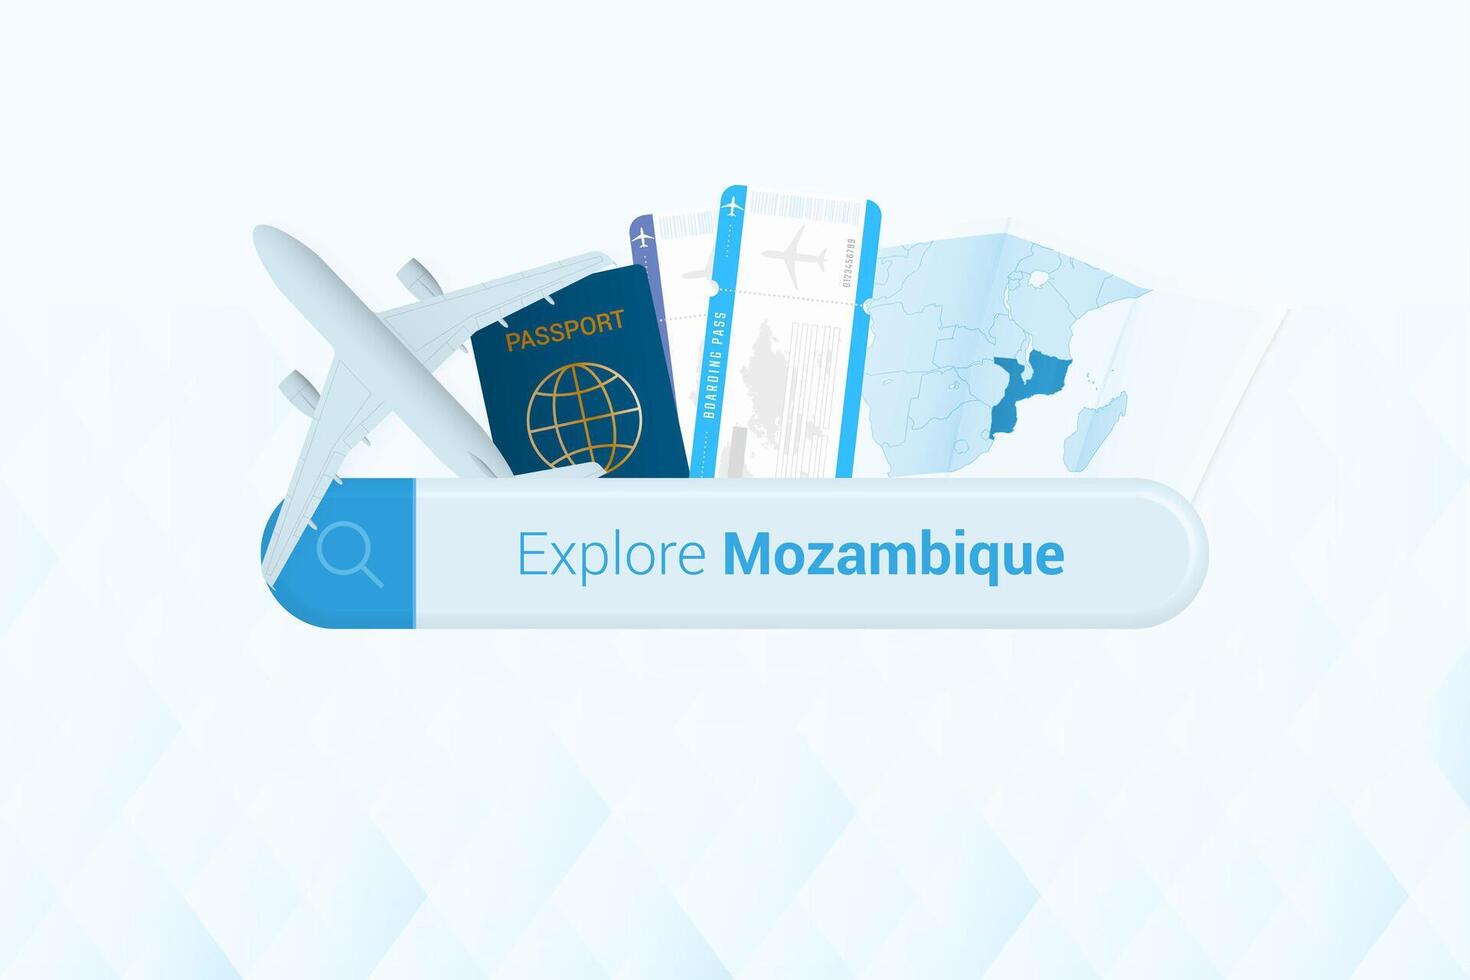 suchen Tickets zu Mozambique oder Reise Ziel im Mosambik. suchen Bar mit Flugzeug, Reisepass, Einsteigen passieren, Tickets und Karte. vektor